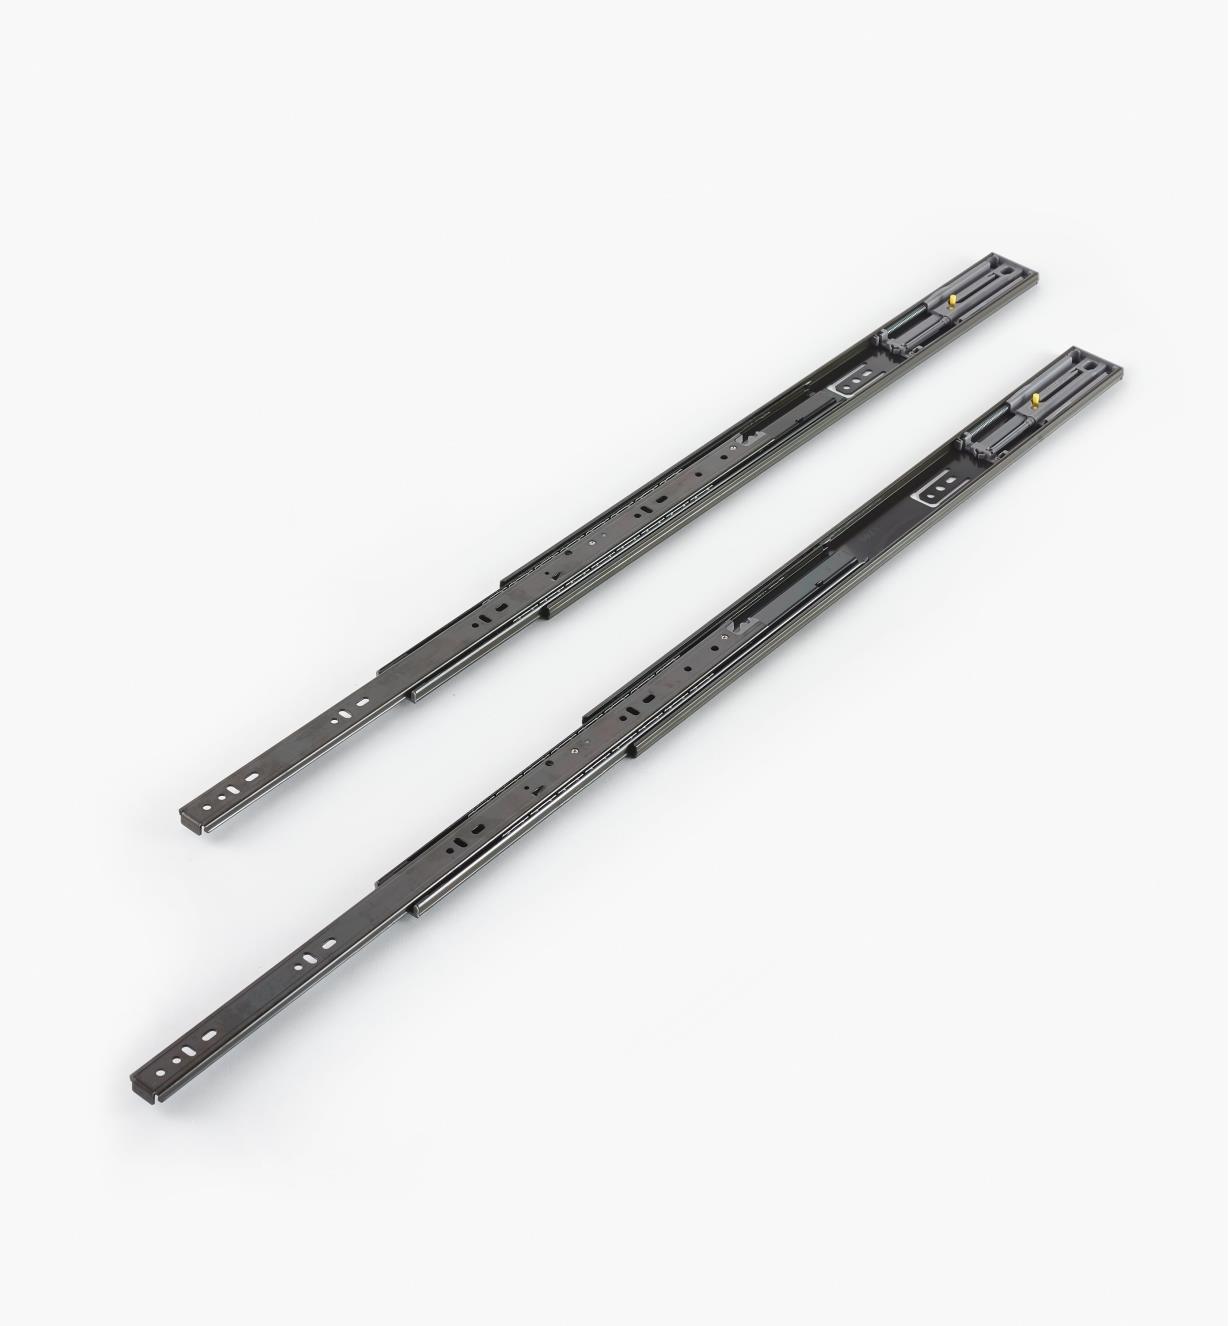 02K5255 - Black Finish, 550mm (22"), Soft-Closing Full-Extension Slides, pr. (100 lb)